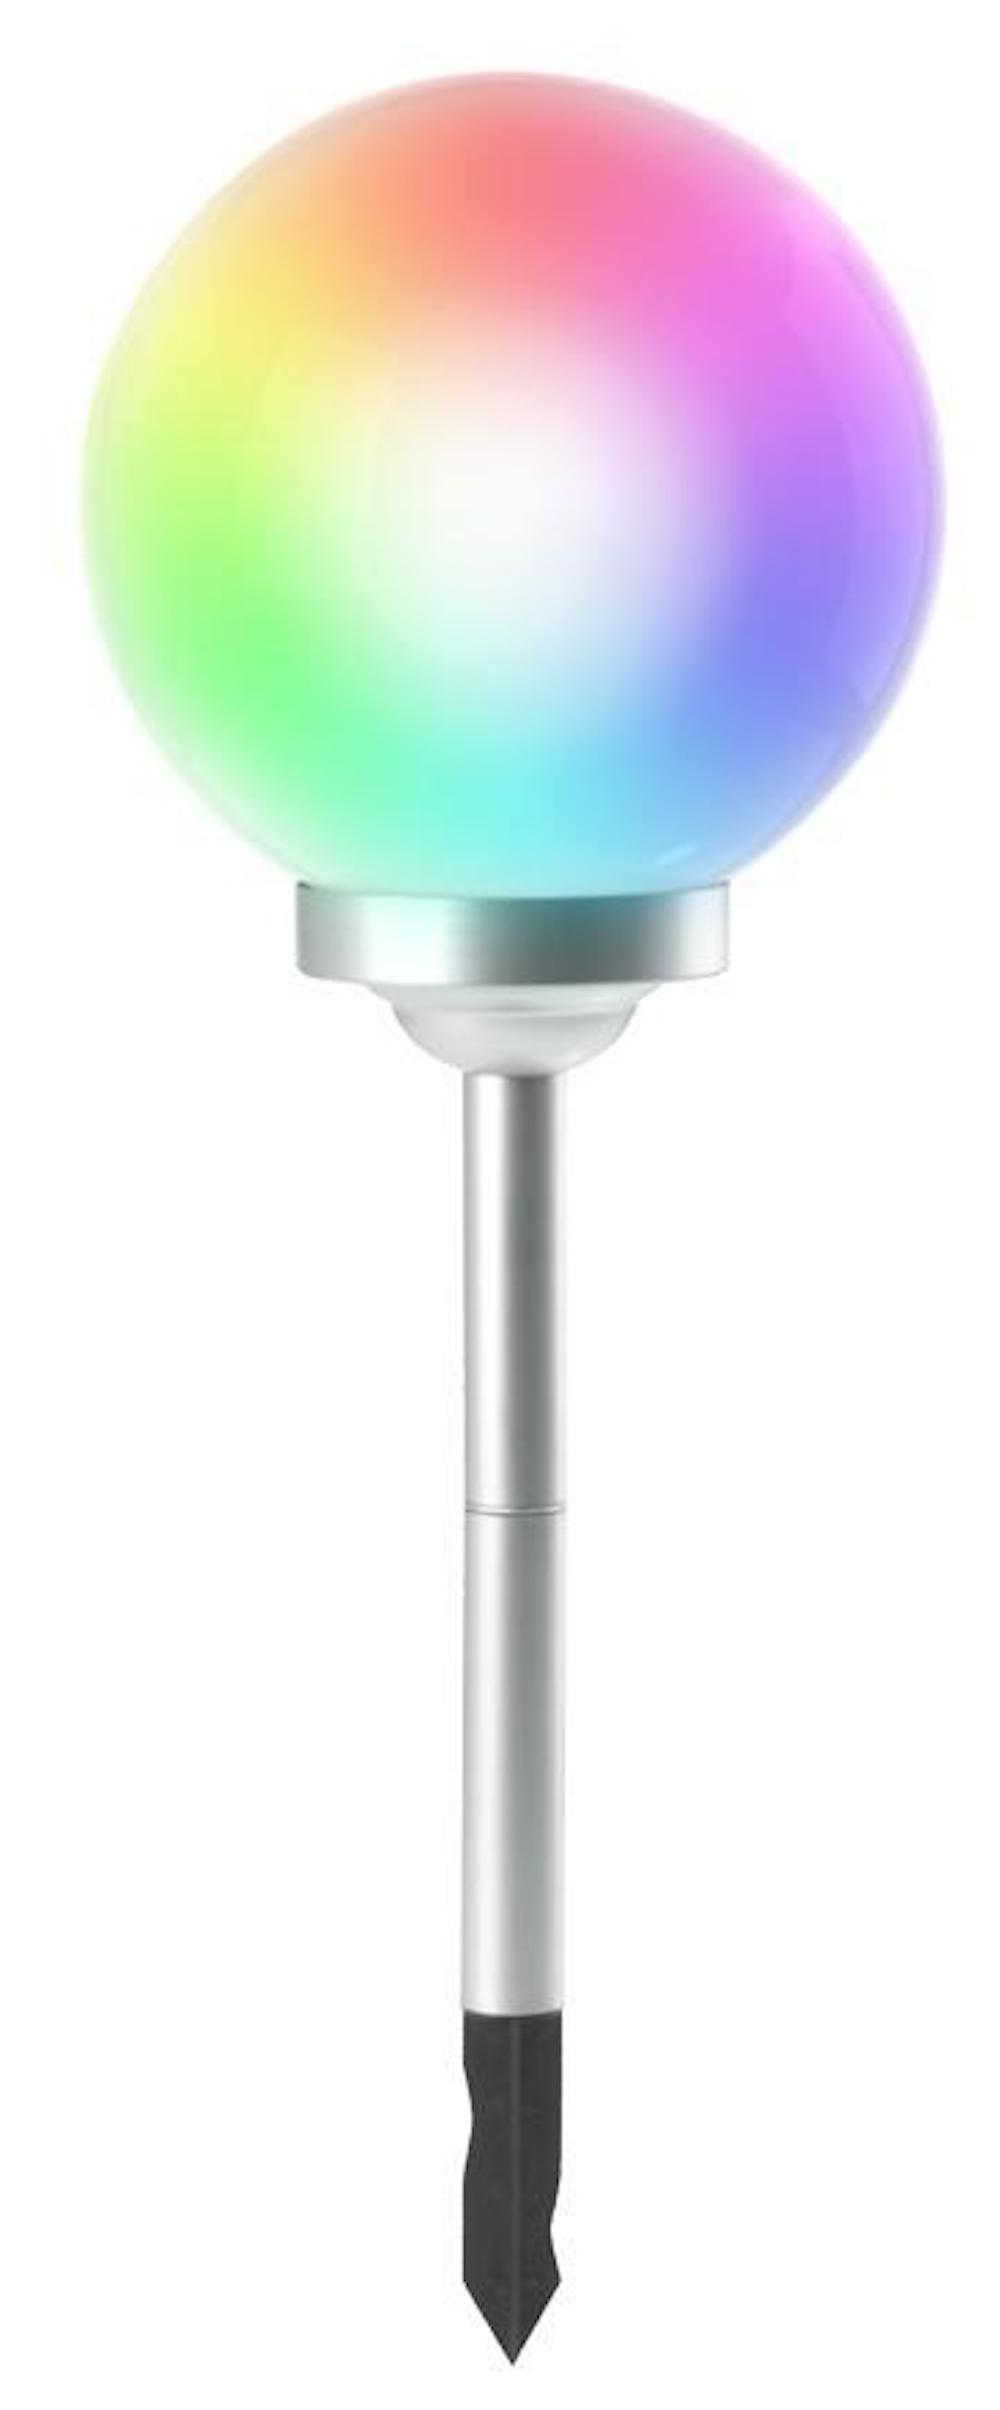 SuperSparSet 2x RAINBOW Solarlampe mit automatischer Einschaltfunktion | HxØ 73,5x30cm | 4-farbige LEDs | Automatisches Schalten | Gartenlampe, Rattanlampe, LED Lampe, Solarlampe